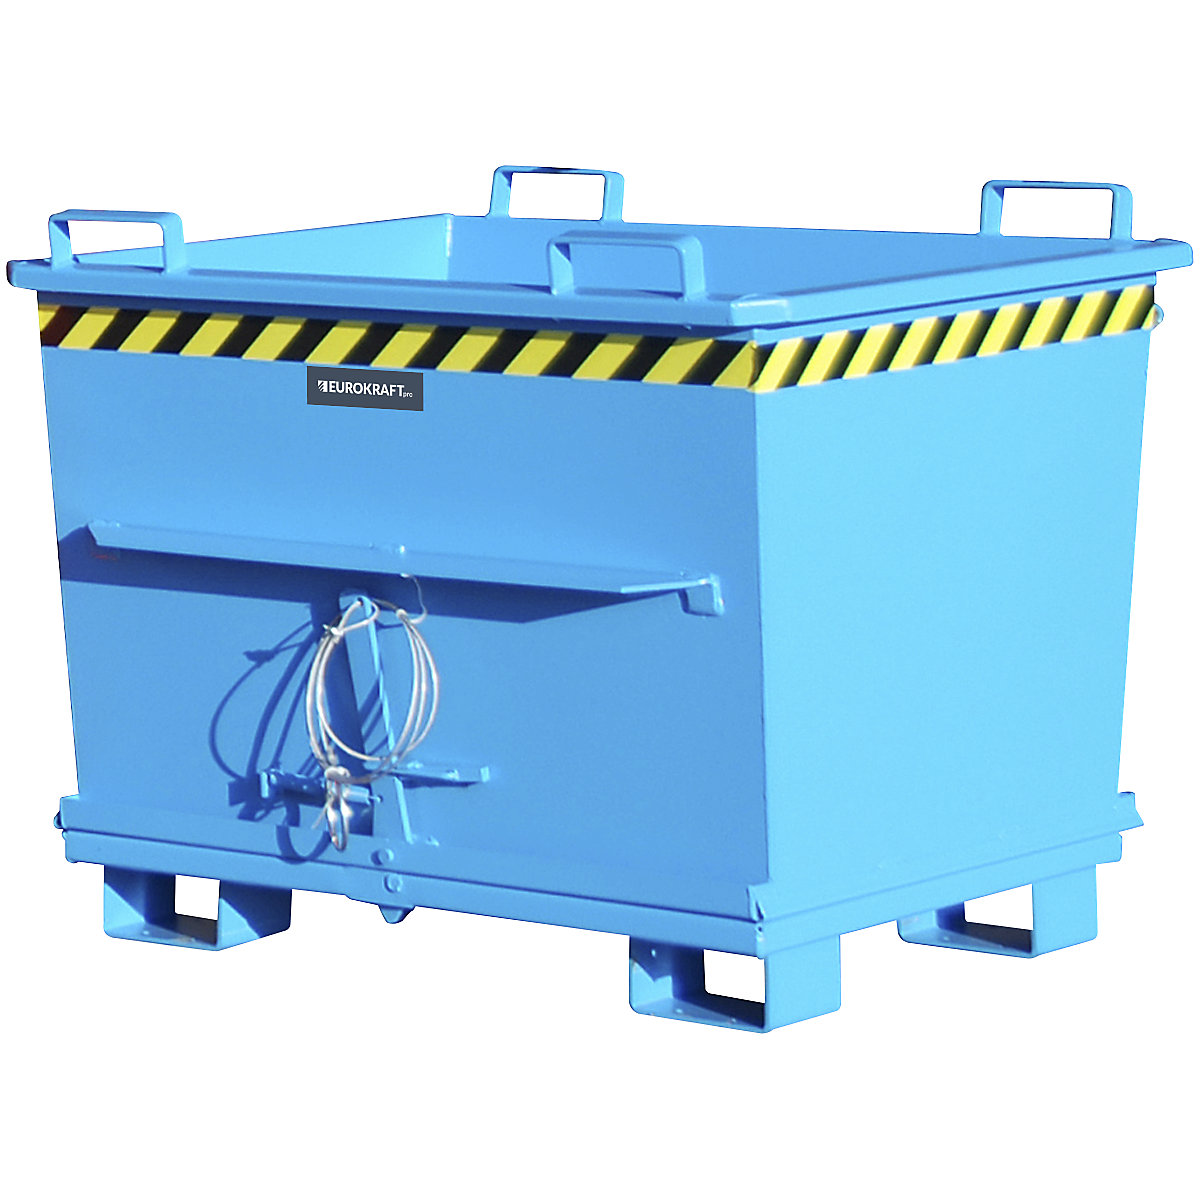 Stożkowy pojemnik z dnem klapowym – eurokraft pro, poj. 0,7 m³, nośność 1500 kg, niebieski, RAL 5012-13